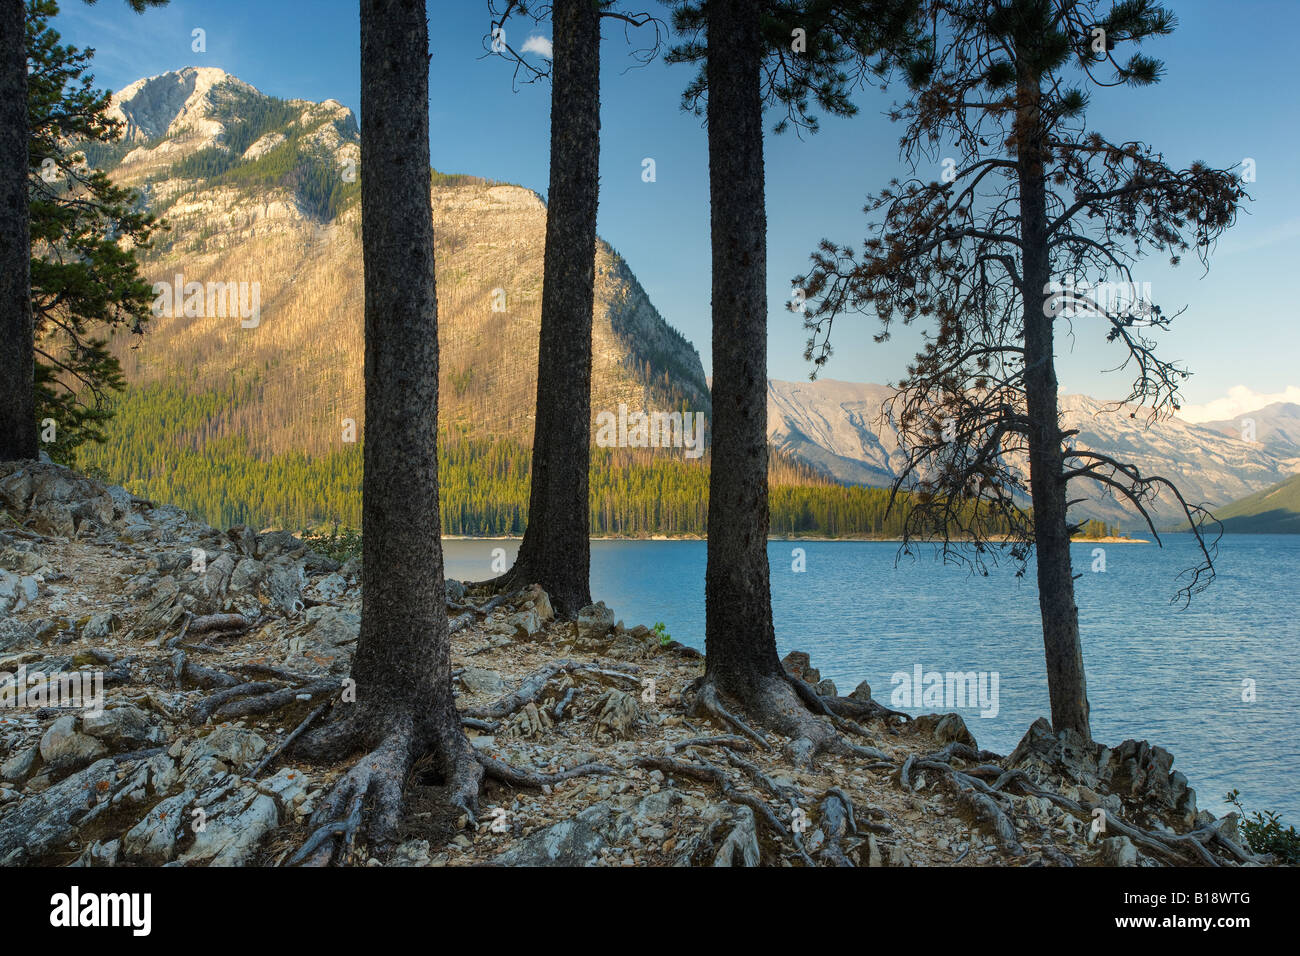 Forêt de pins tordus au lac Minnewanka - Parc national Banff - Alberta, Canada. Banque D'Images